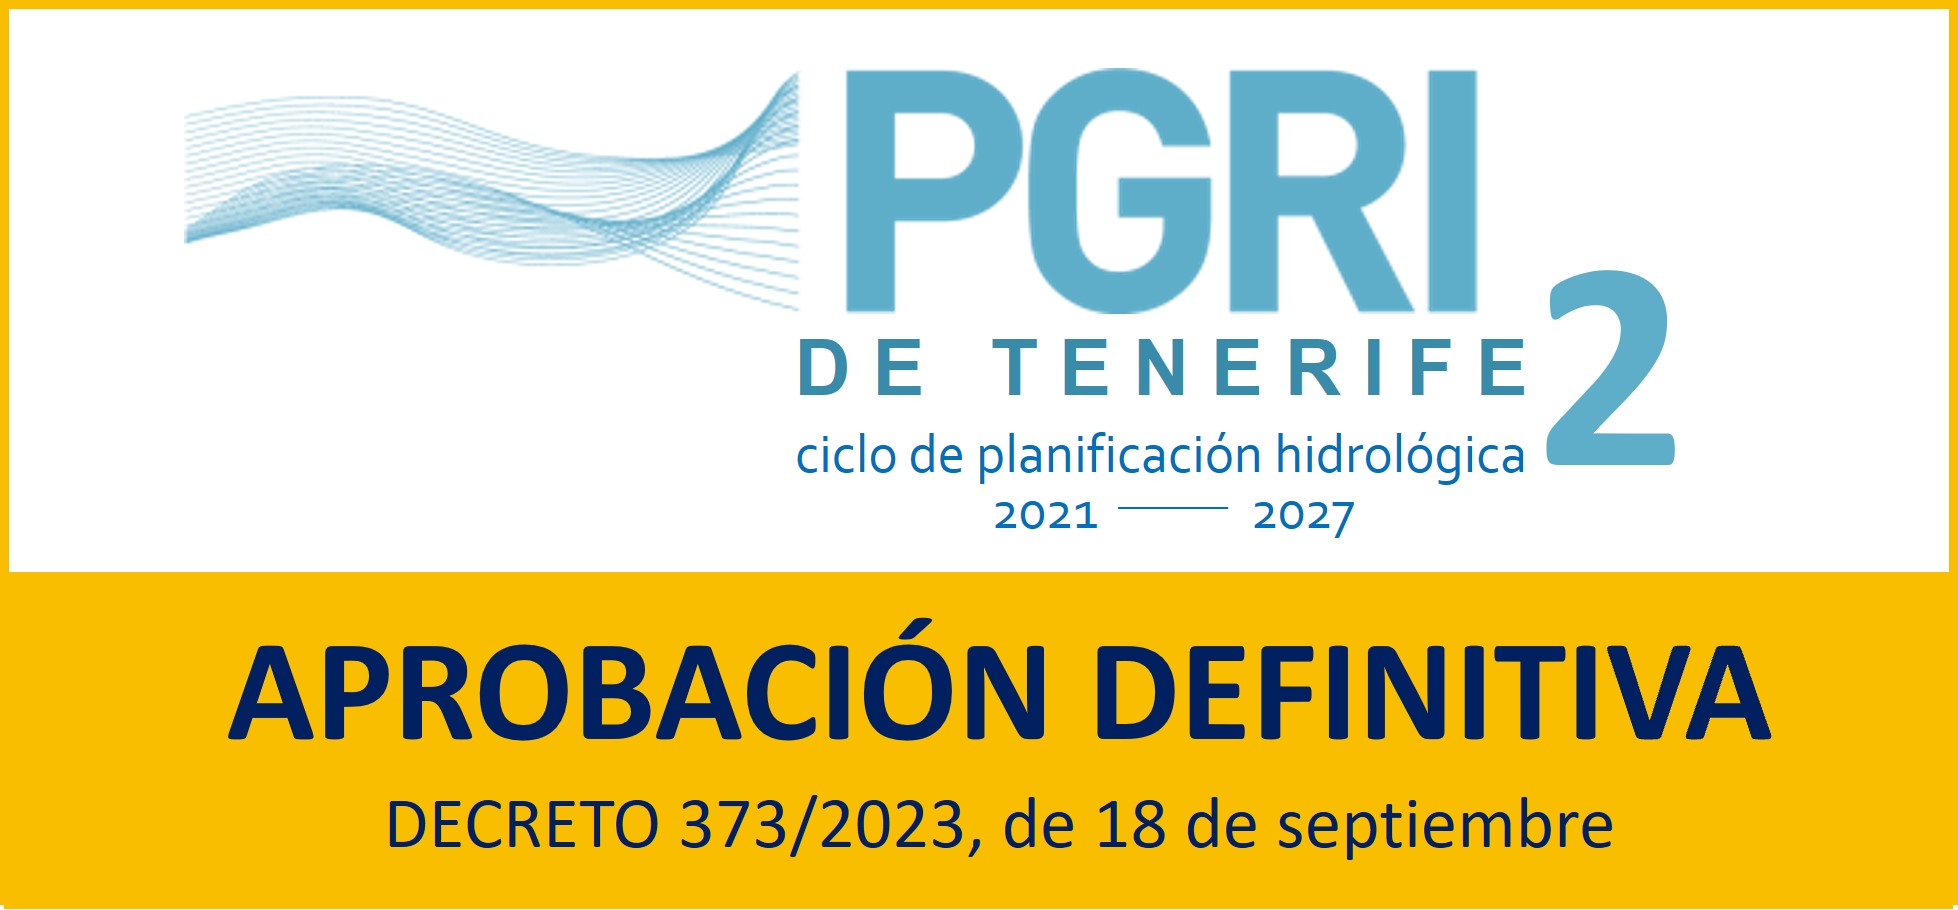 DECRETO 373/2023, de 18 de septiembre, por el que se aprueba definitivamente el Plan Especial de Gestión del Riesgo de Inundación de la Demarcación Hidrográfica de Tenerife, Segundo Ciclo (2021-2027). B.O.C. núm. 191 de 27 de septiembre de 2023